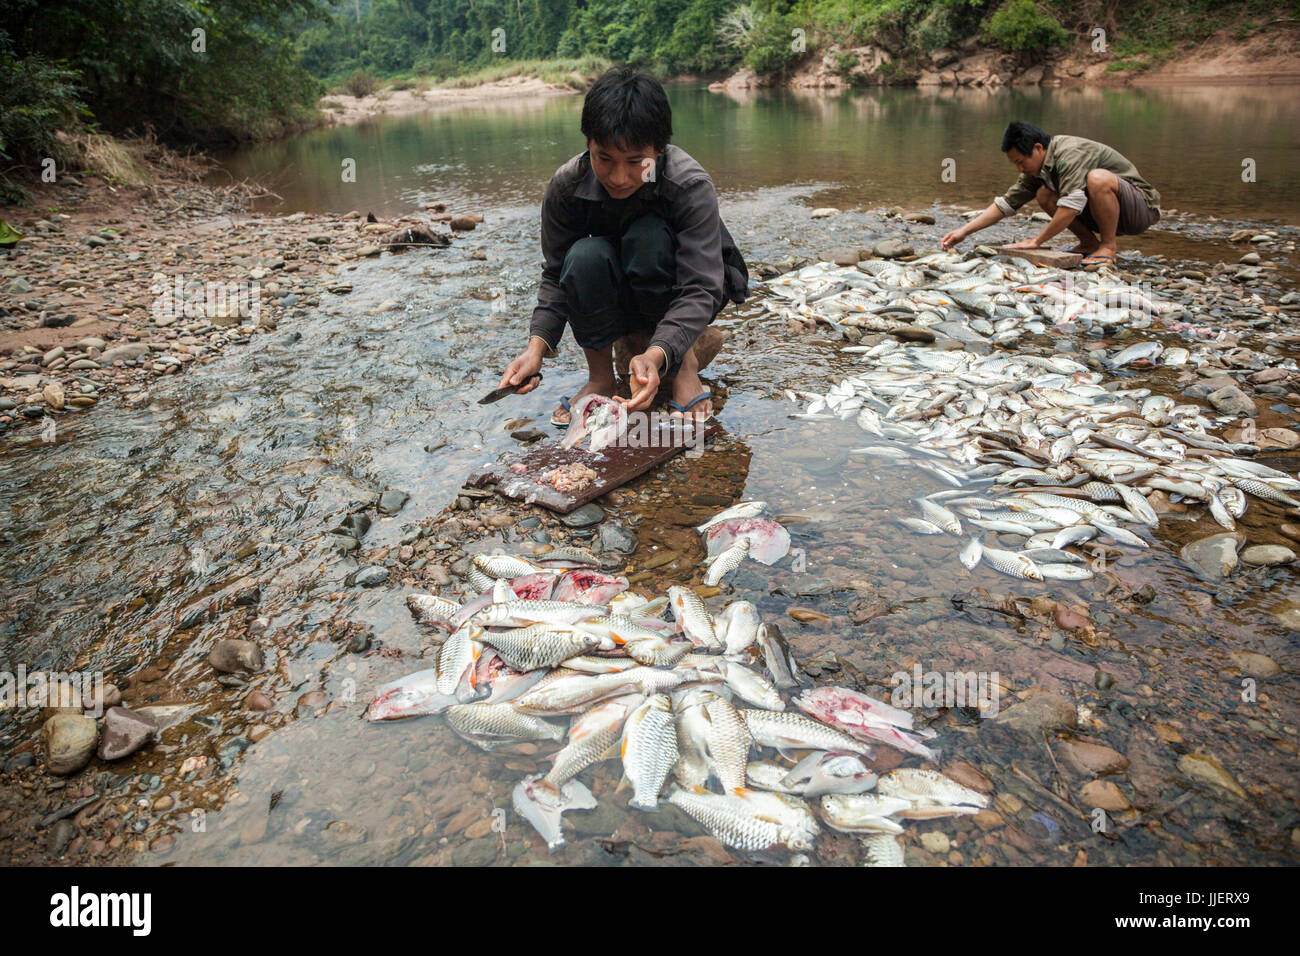 Los hombres gut pescado tienen atrapada en su campamento en el río Nam Ou, en Phou Den Din, Área Protegida Nacional de Laos. La zona es frecuentada por cazadores y pescadores que acampar y cazar animales silvestres dentro de los límites del parque, a pesar de (o quizás sin conocimiento) que esto es técnicamente ilegal. Foto de stock